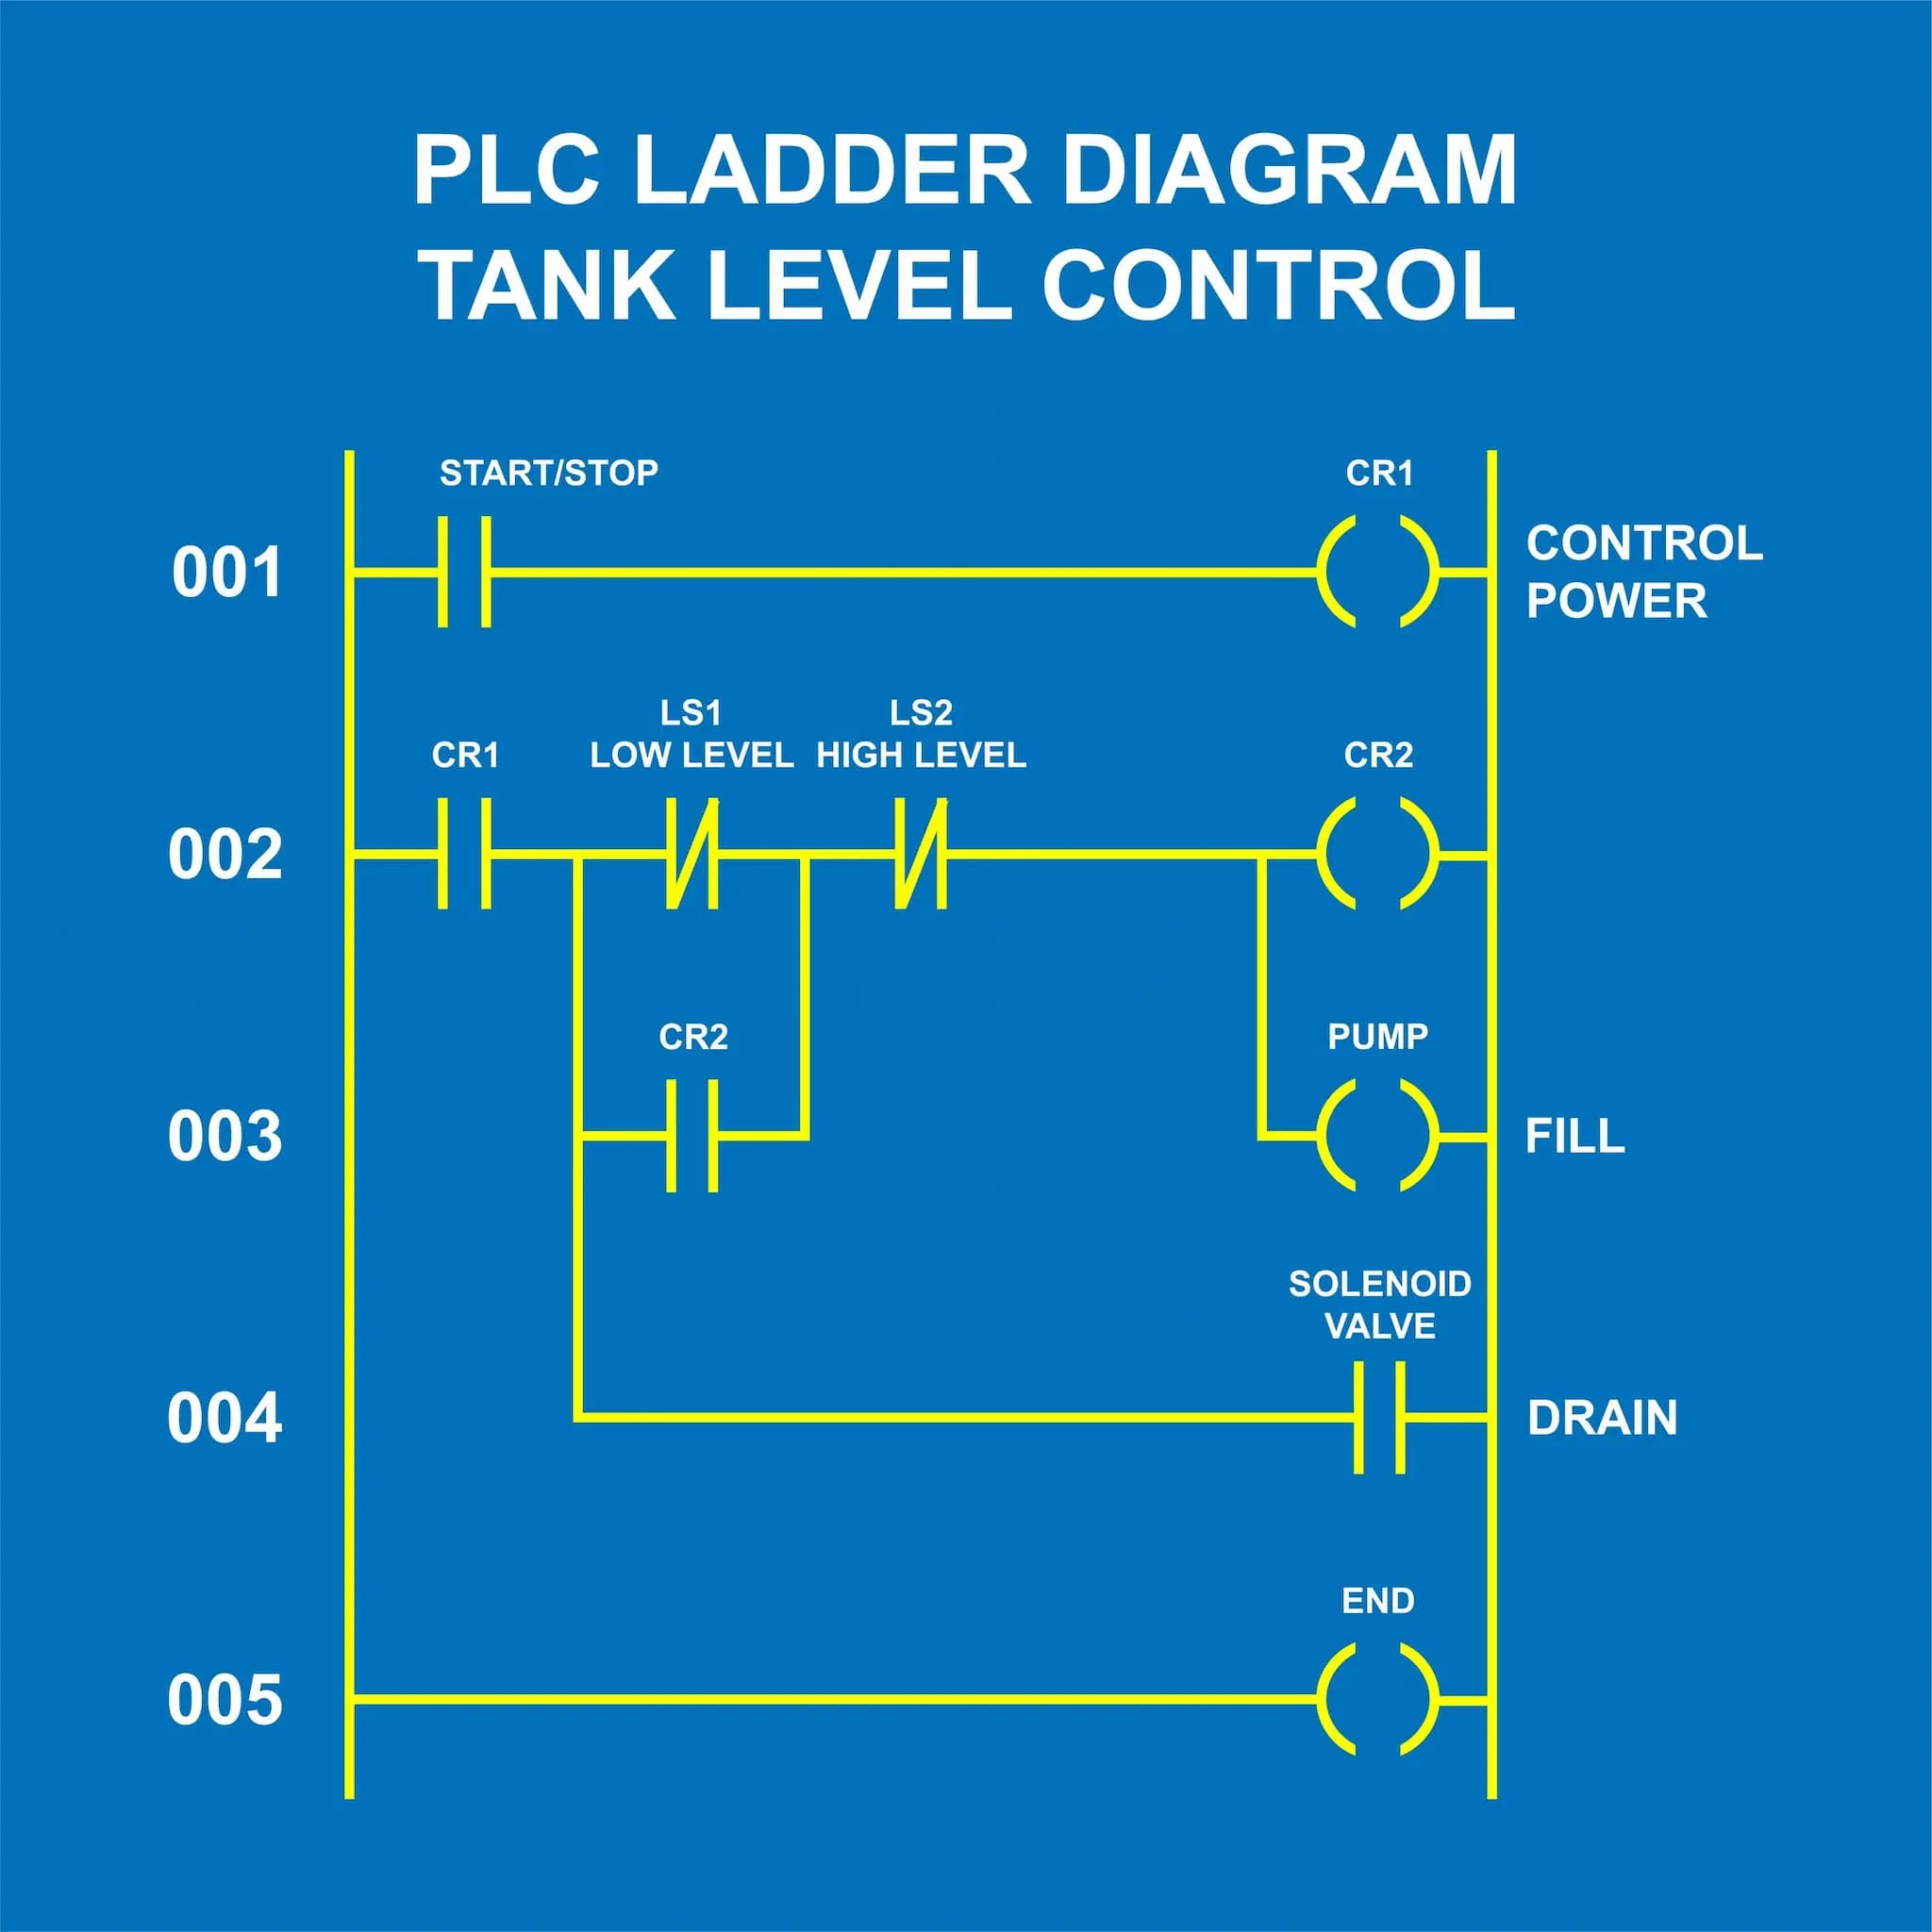 Diagramme en échelle d'un contrôle de niveau de réservoir par PLC